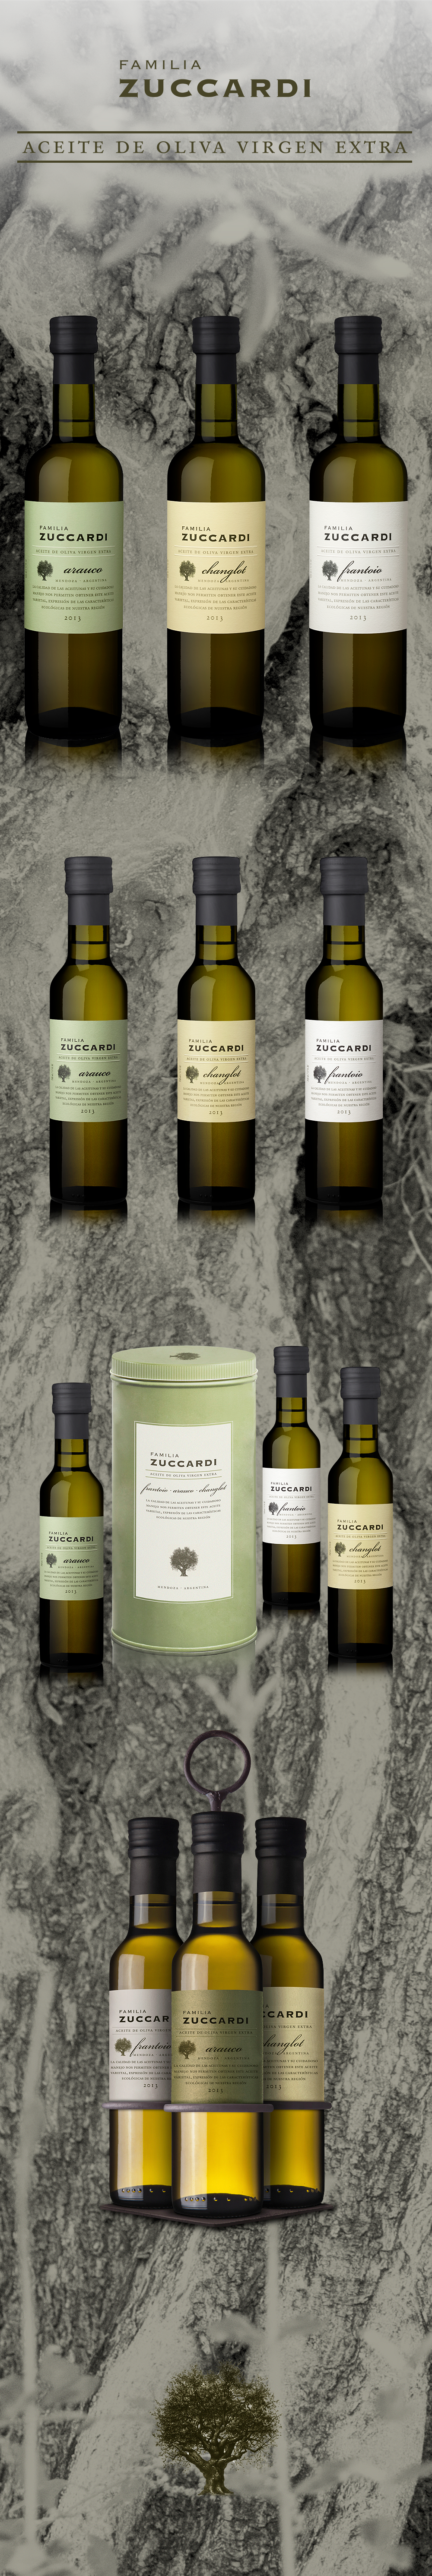 estudio iuvaro etiqueta Label aceite oil olive oliva zuccardi